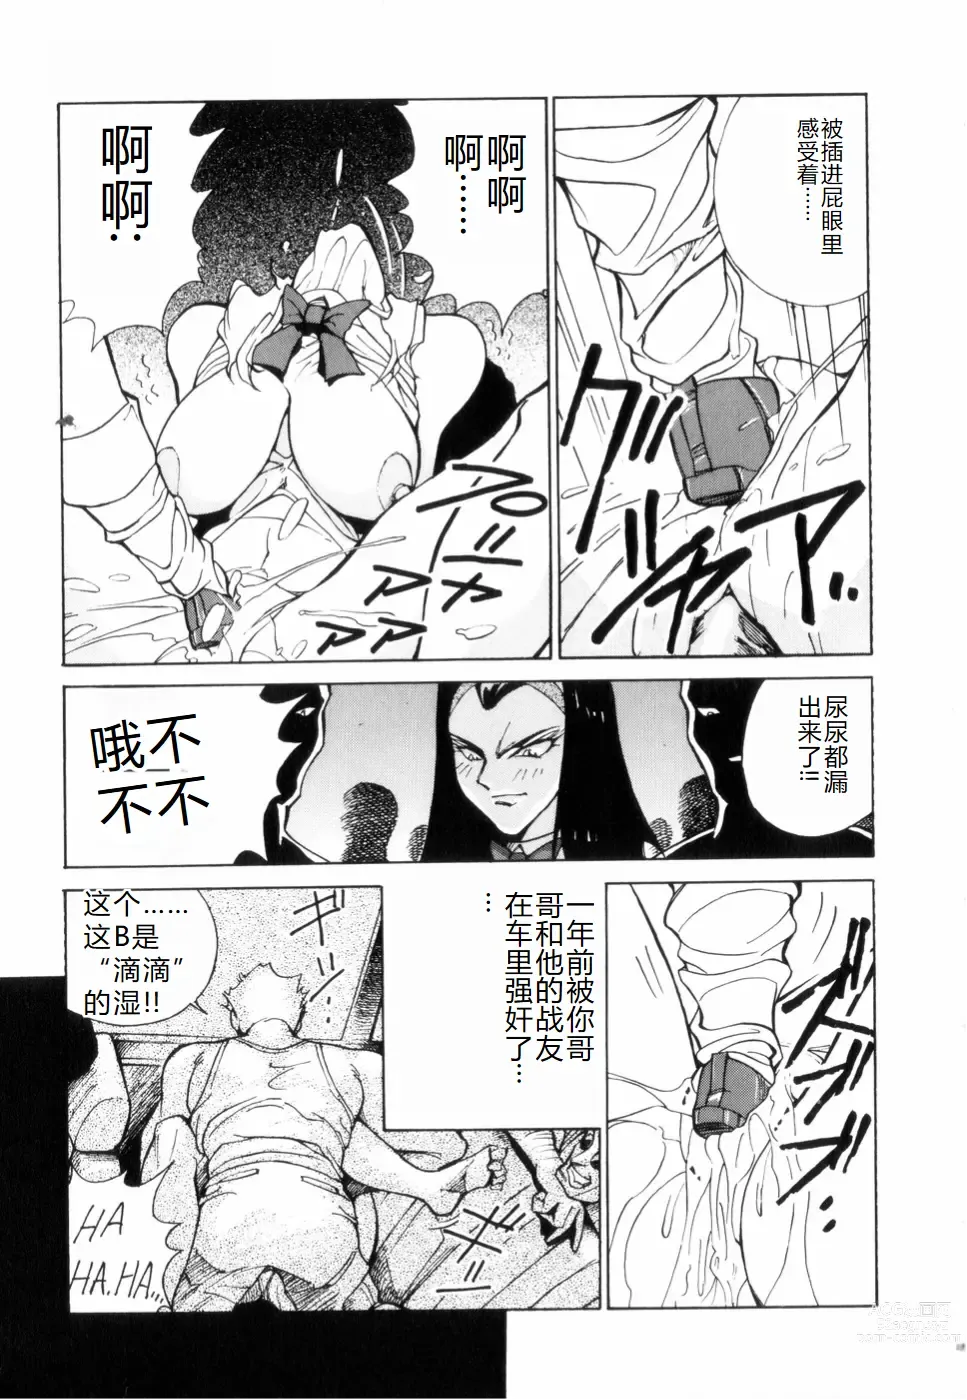 Page 151 of manga Hakujuu no Hasha